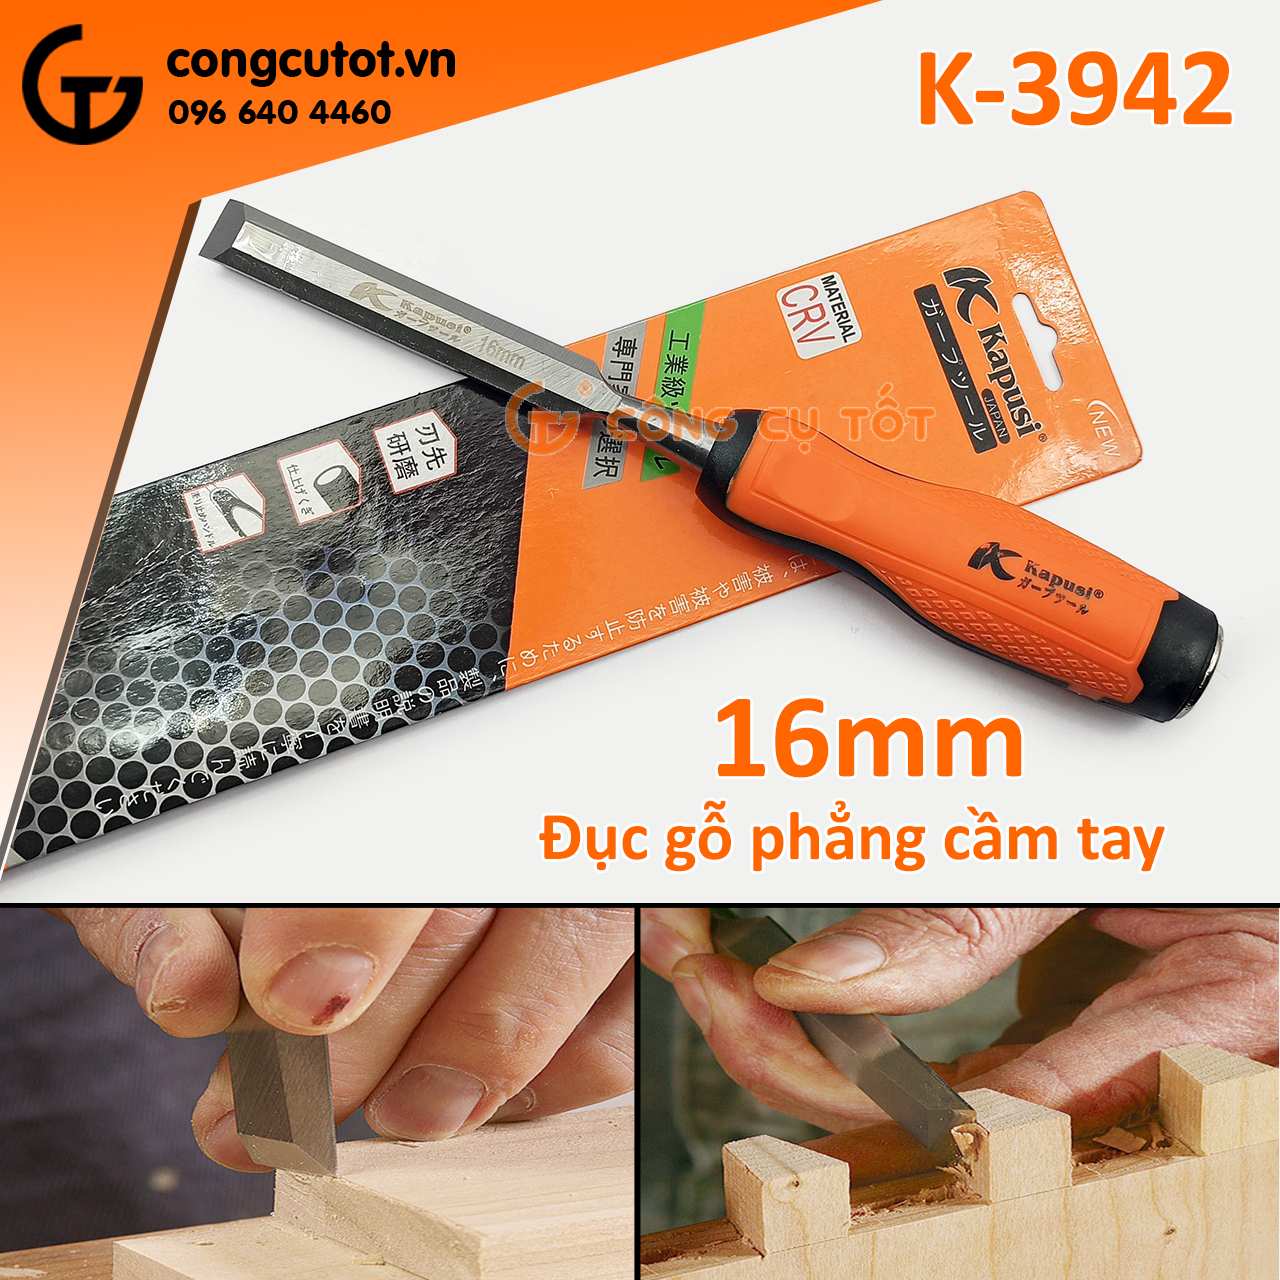 Đục gỗ phẳng cầm tay 16mm Kapusi K-3942